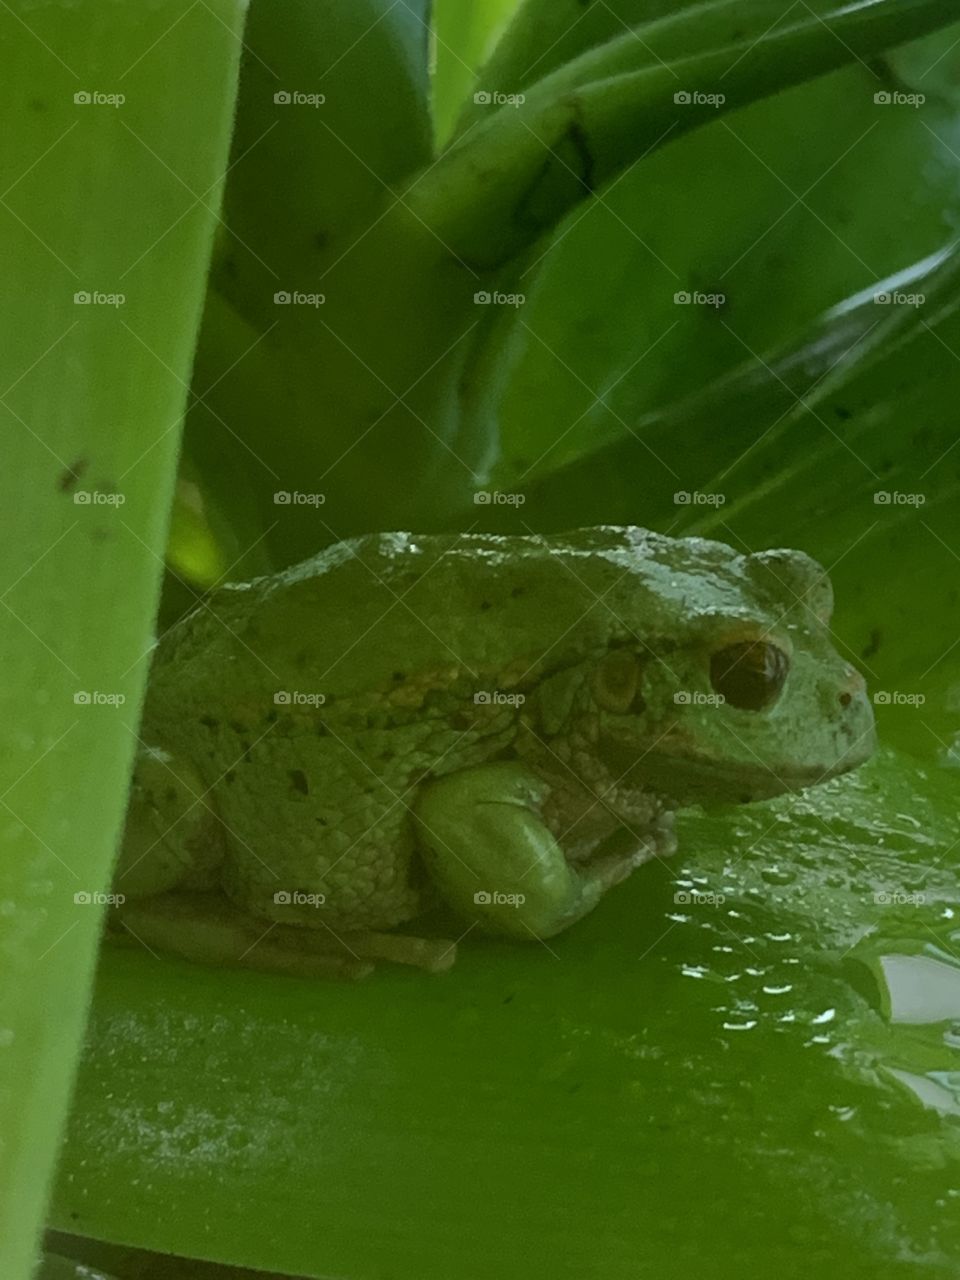 Green frog on leaf 